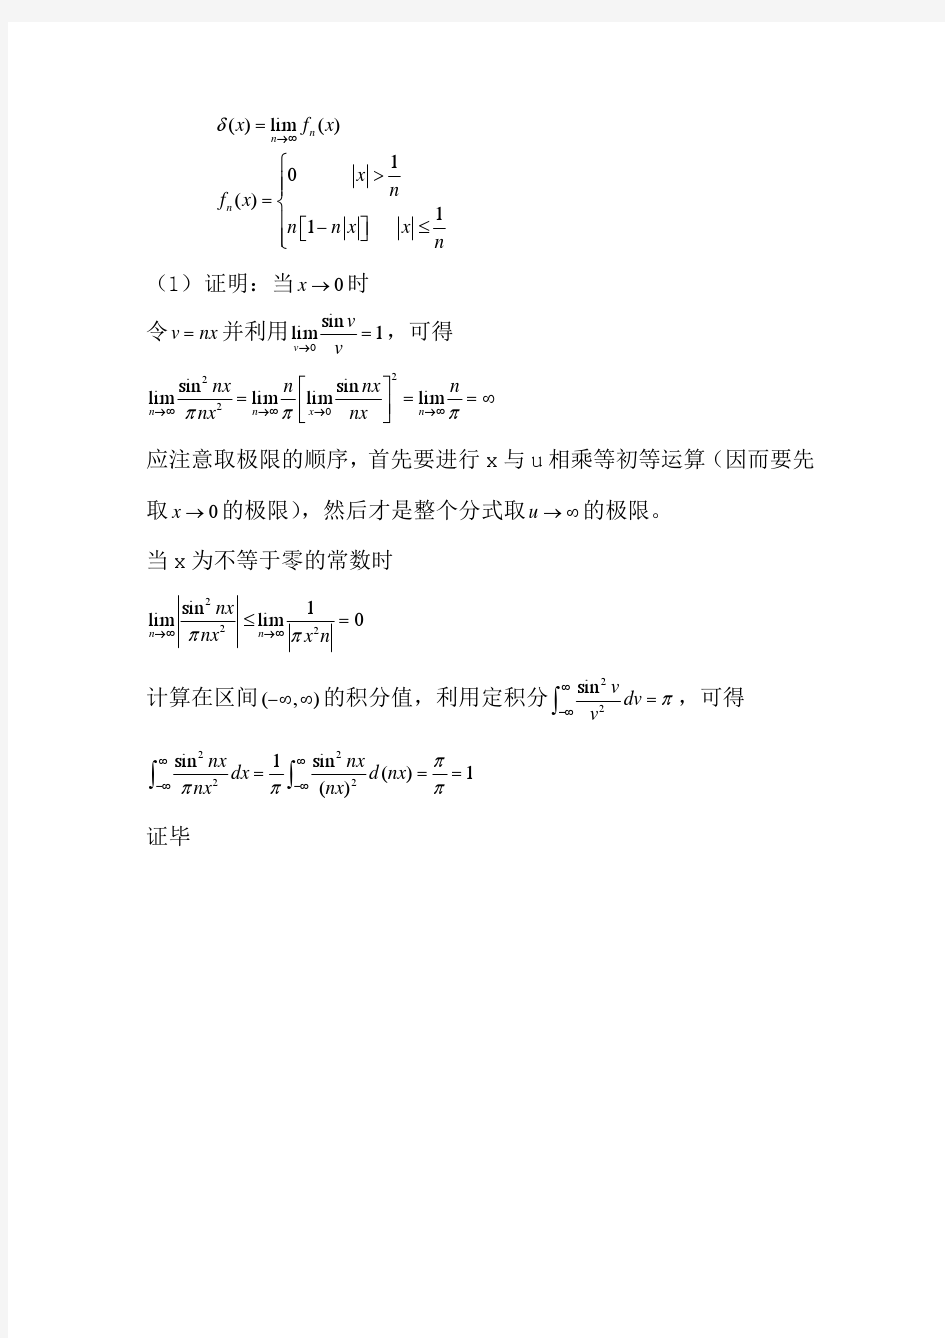 数学物理方法答案(11) 刘连寿